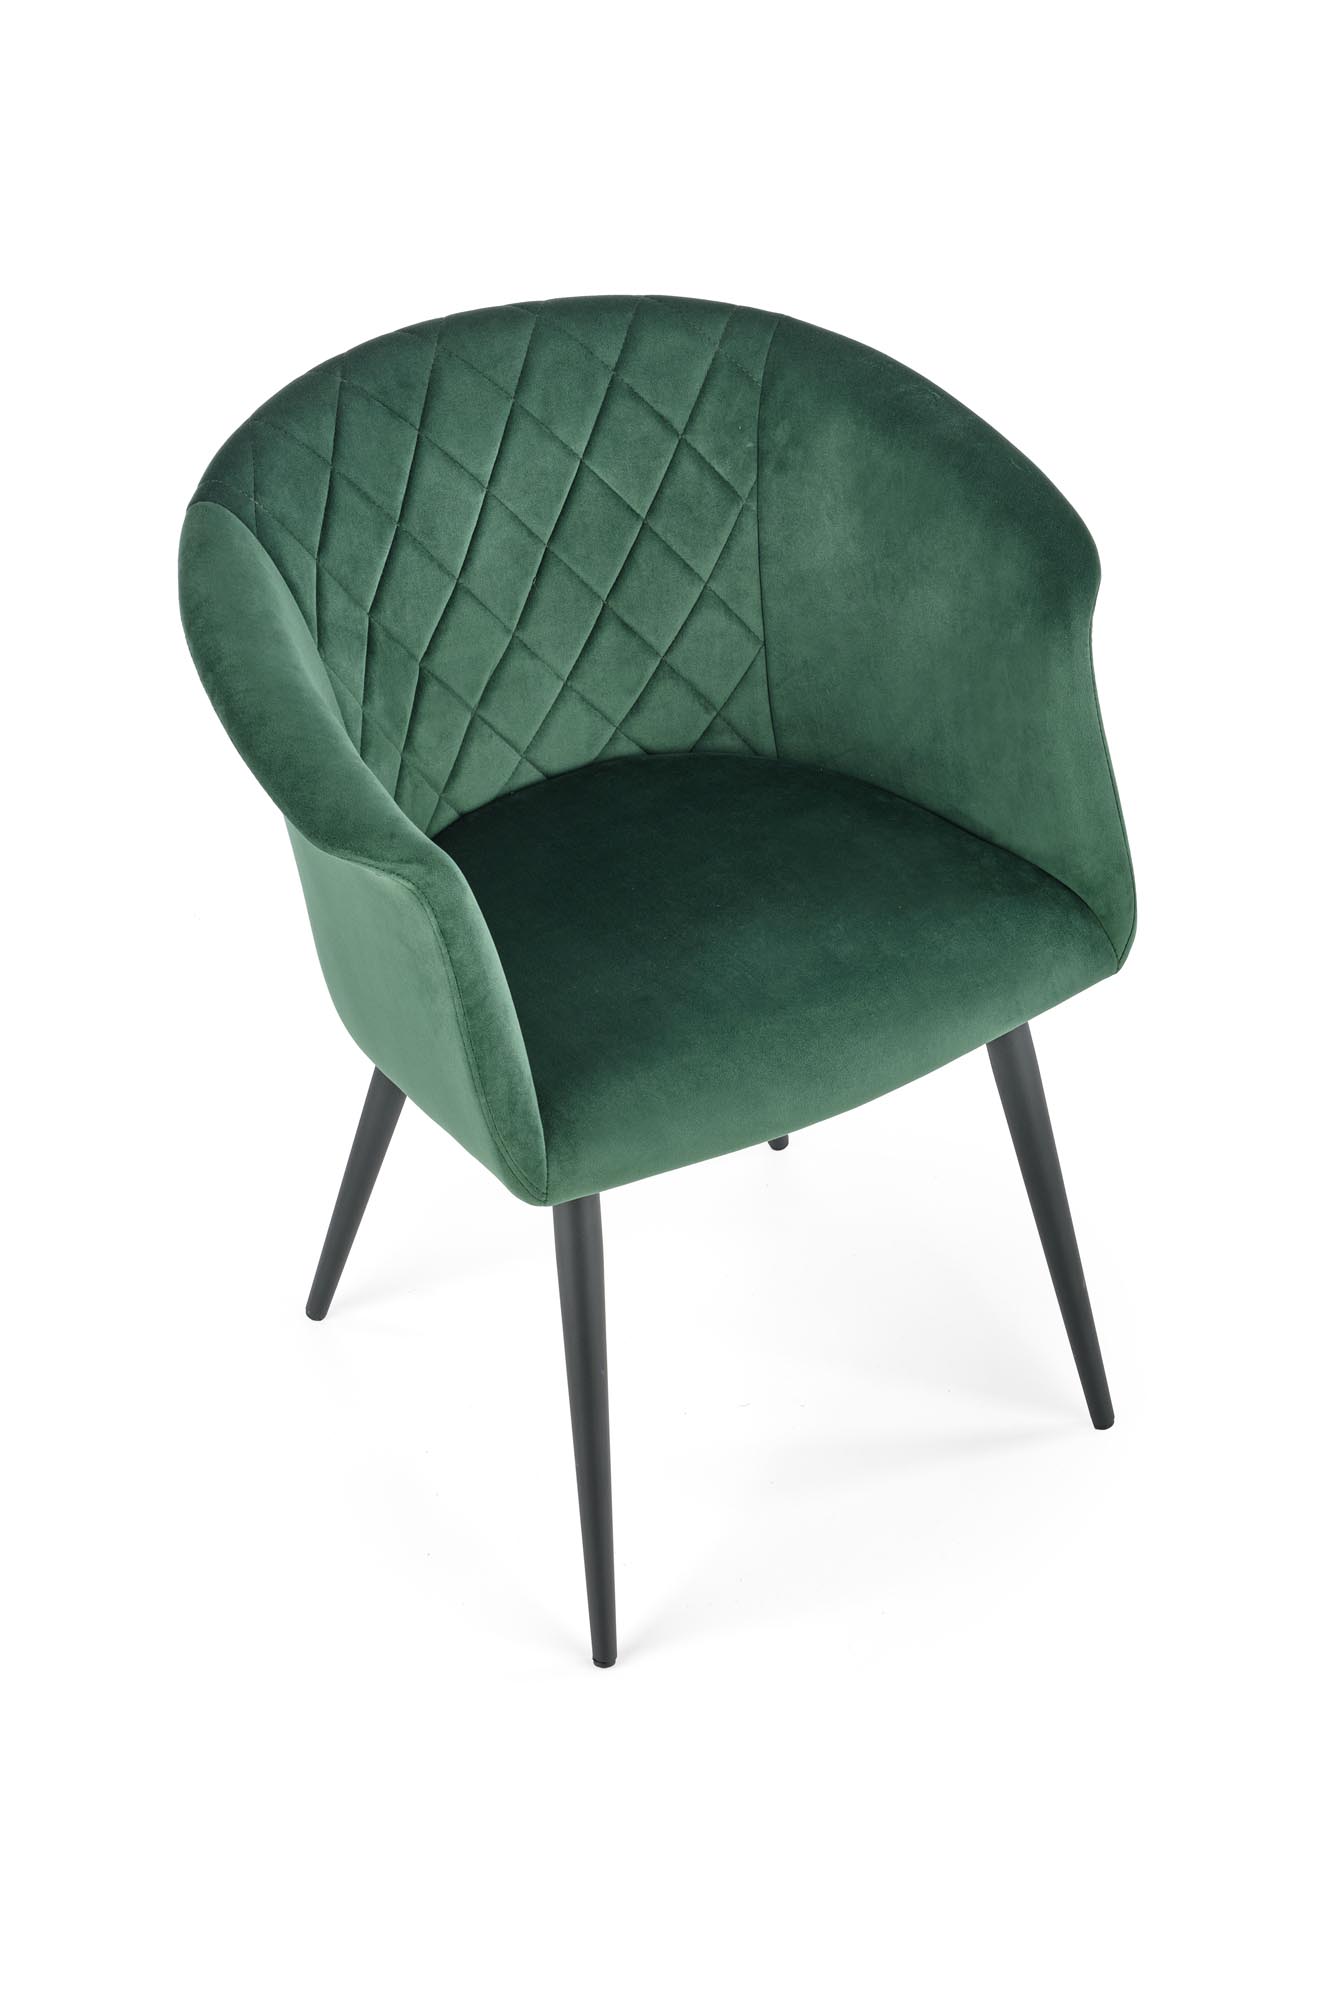 K421 krzesło ciemny zielony k421 krzesło ciemny zielony